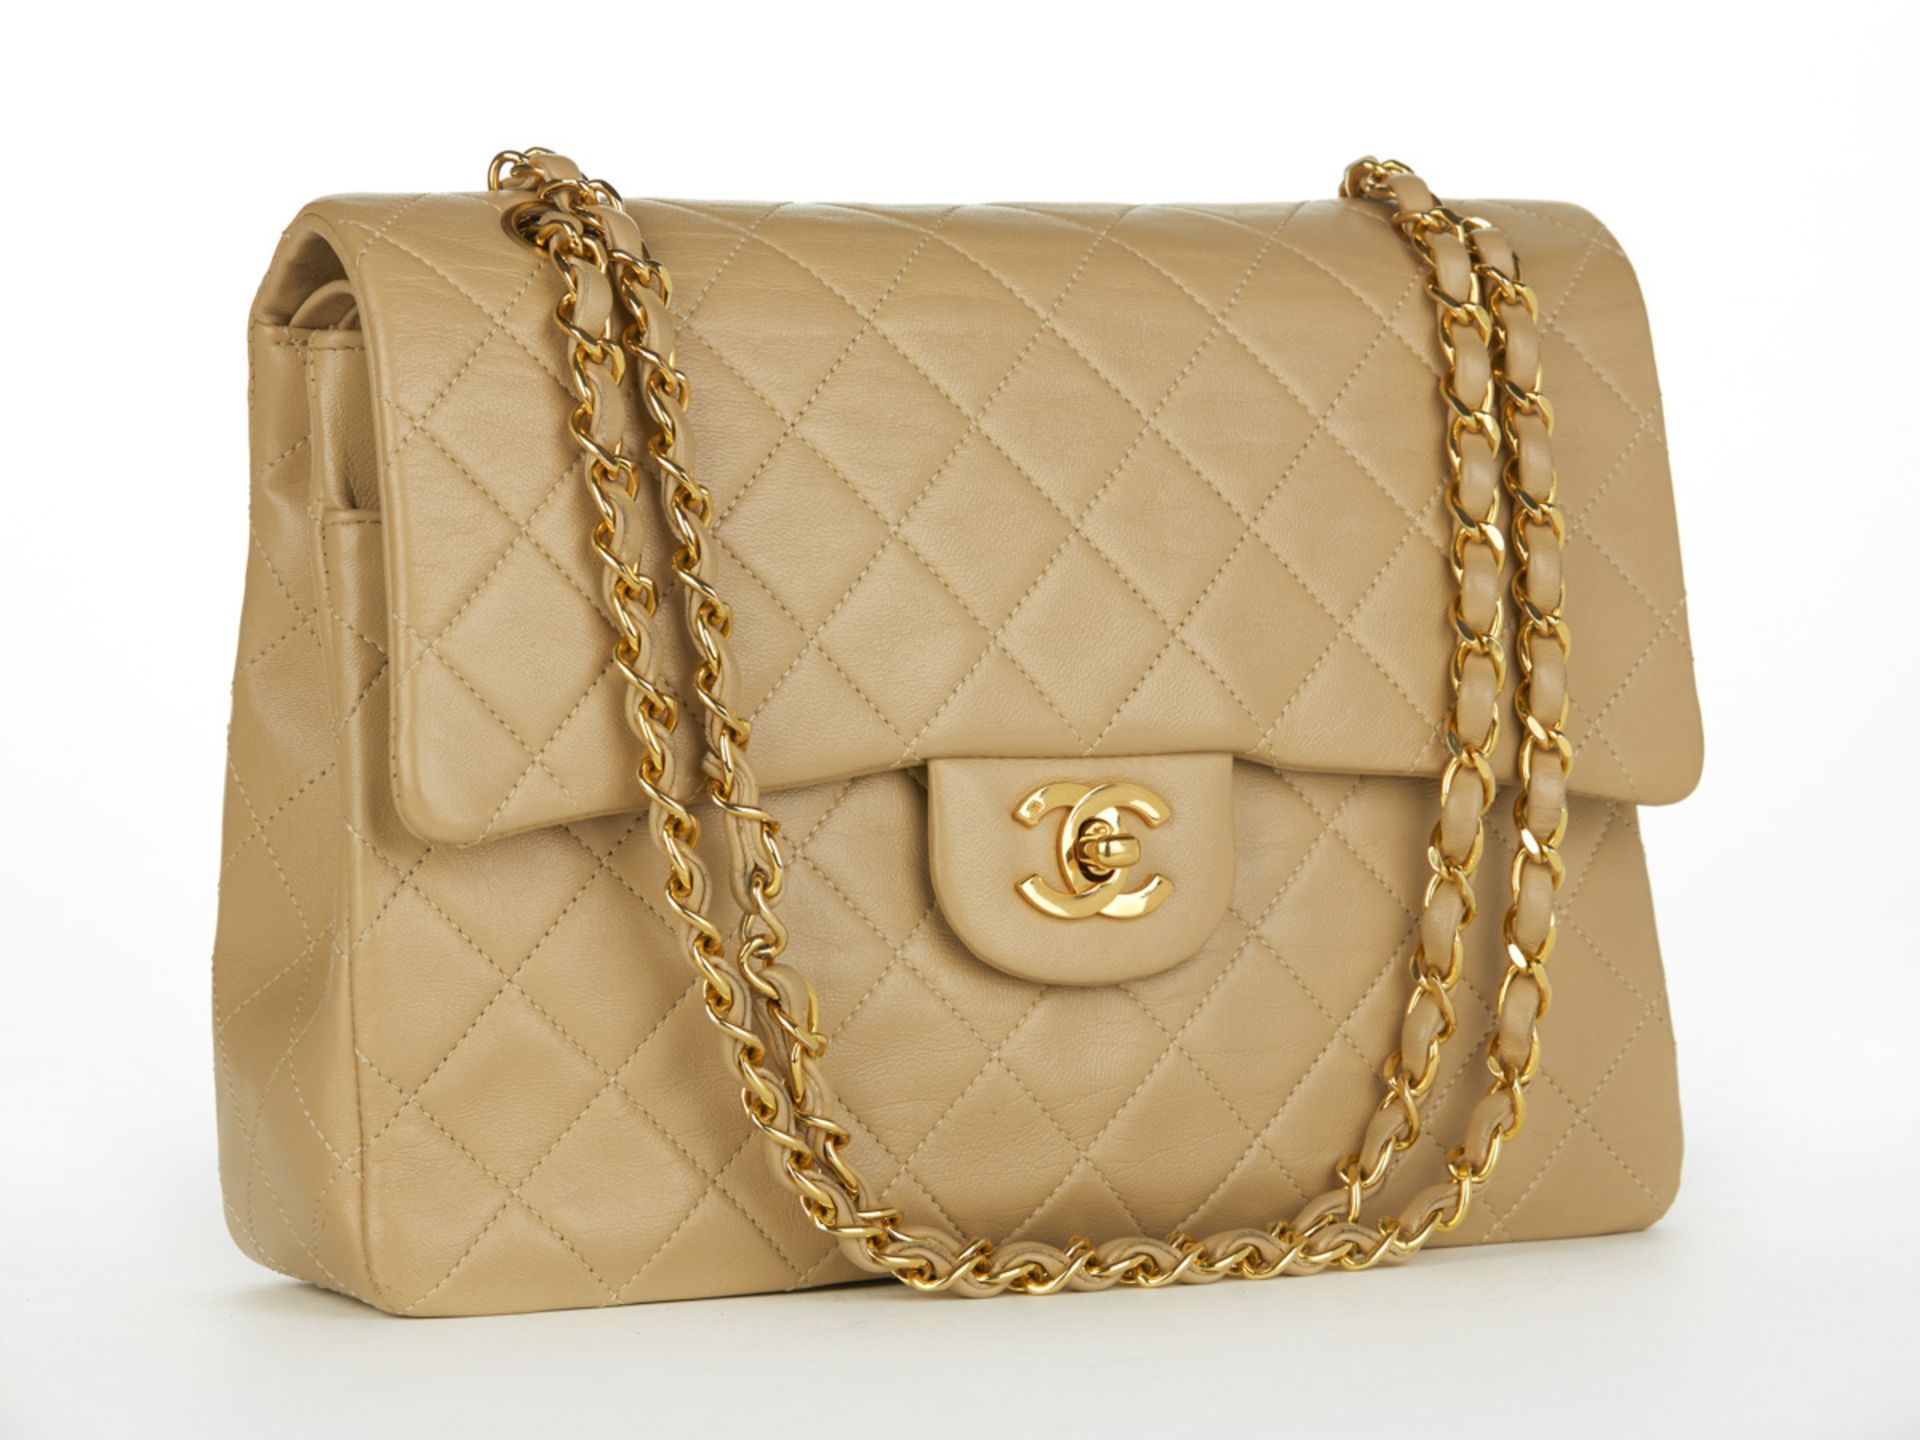 HB097 Chanel - Jumbo Classic Double Flap Bag - Image 2 of 10